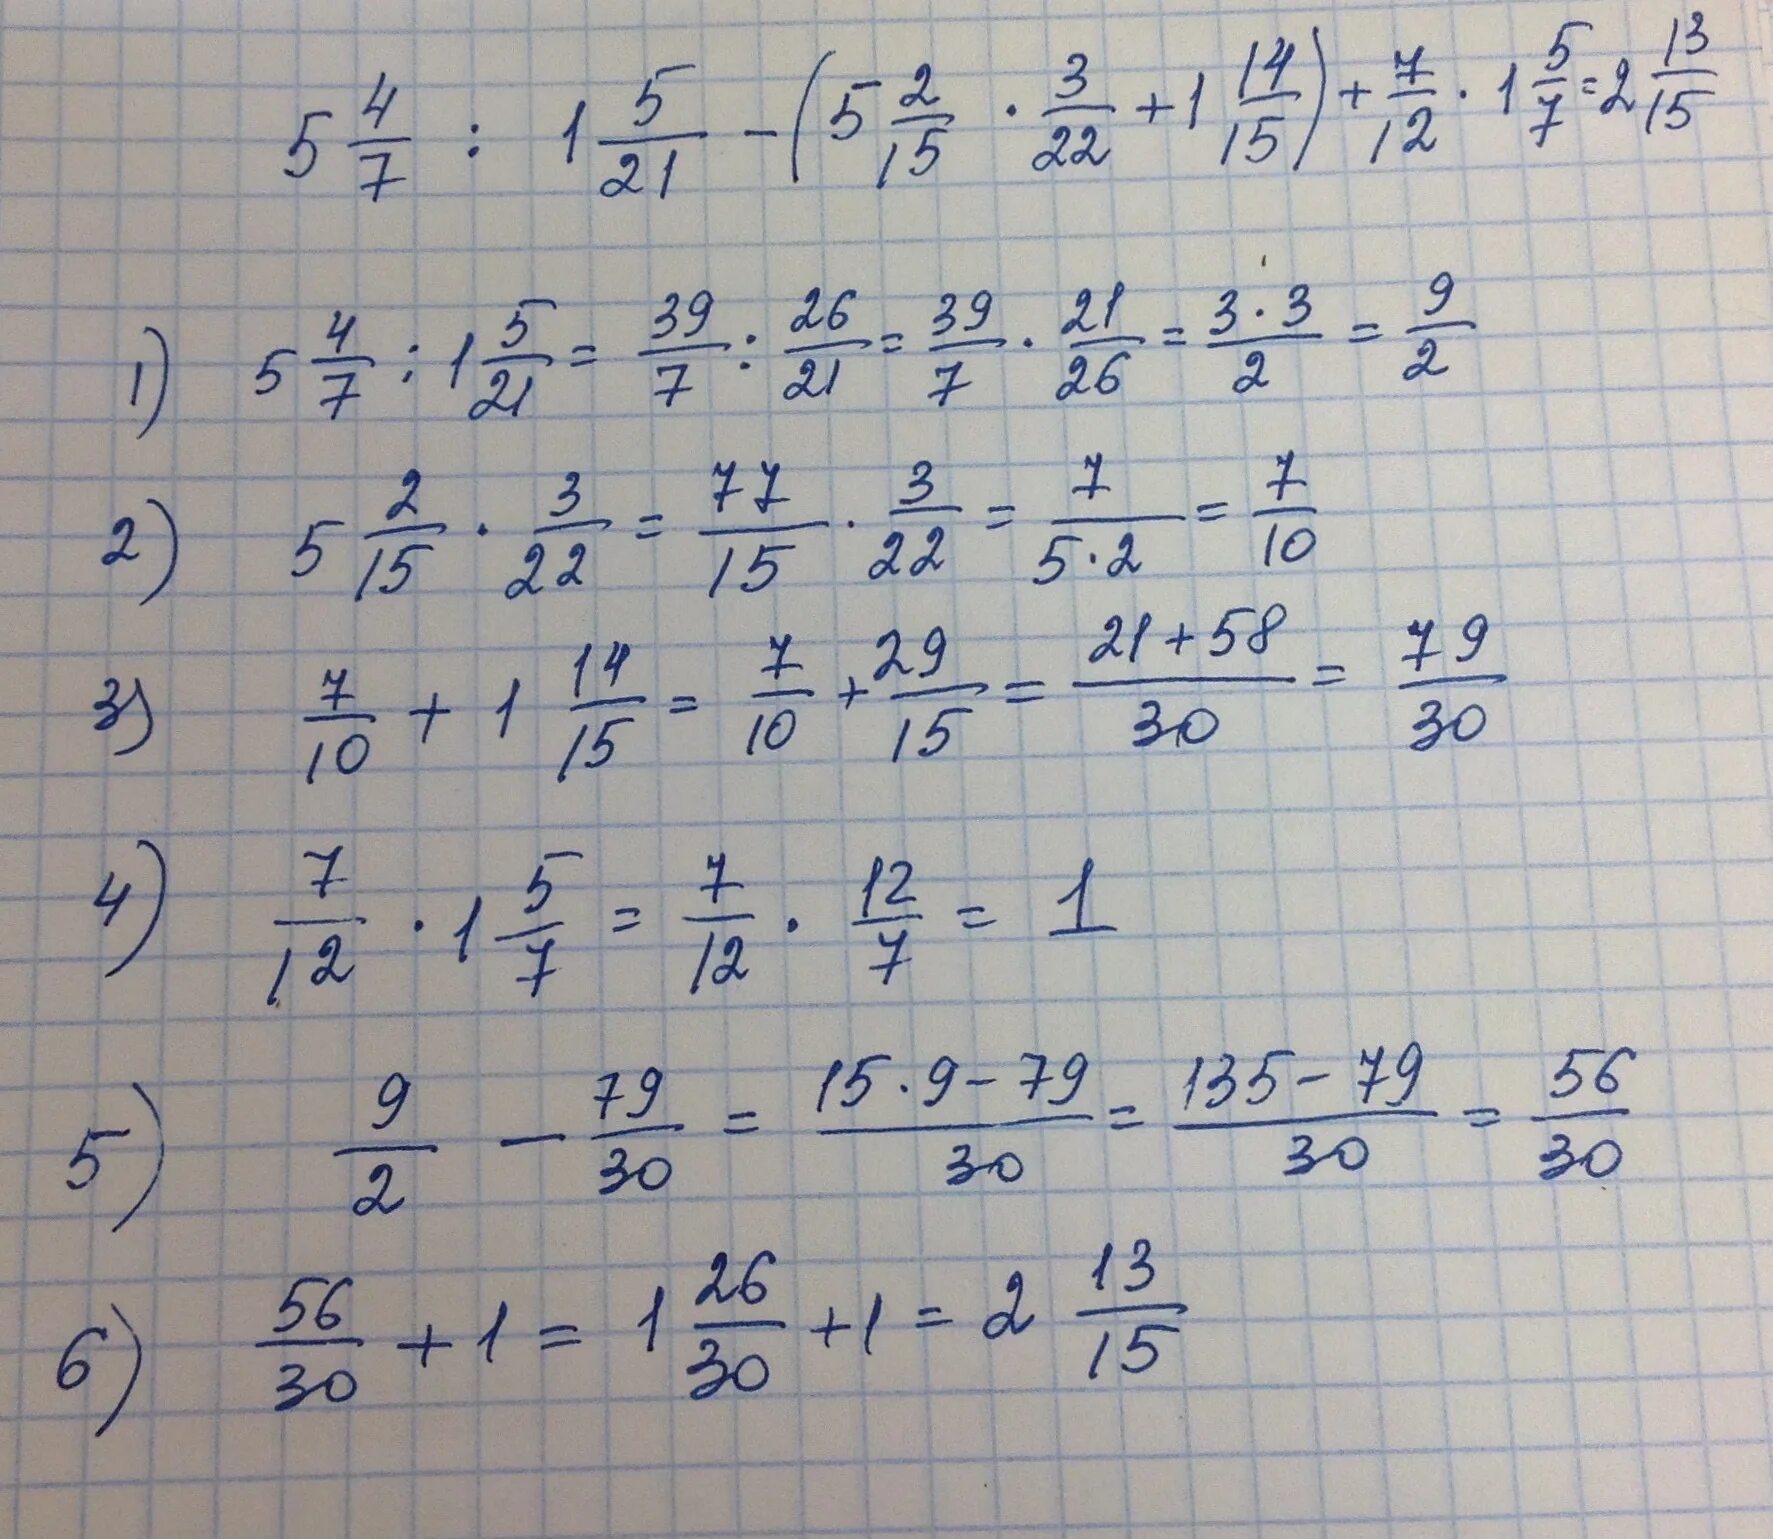 НВКУ 49-12-7. 5 × 12/15 +(5,6-11,2):1, 6/5. 5 1/3×2 1/4÷7 1/5 ответ. (5/6+2 3/4):4 7/9*2 2/3-1 2/3.